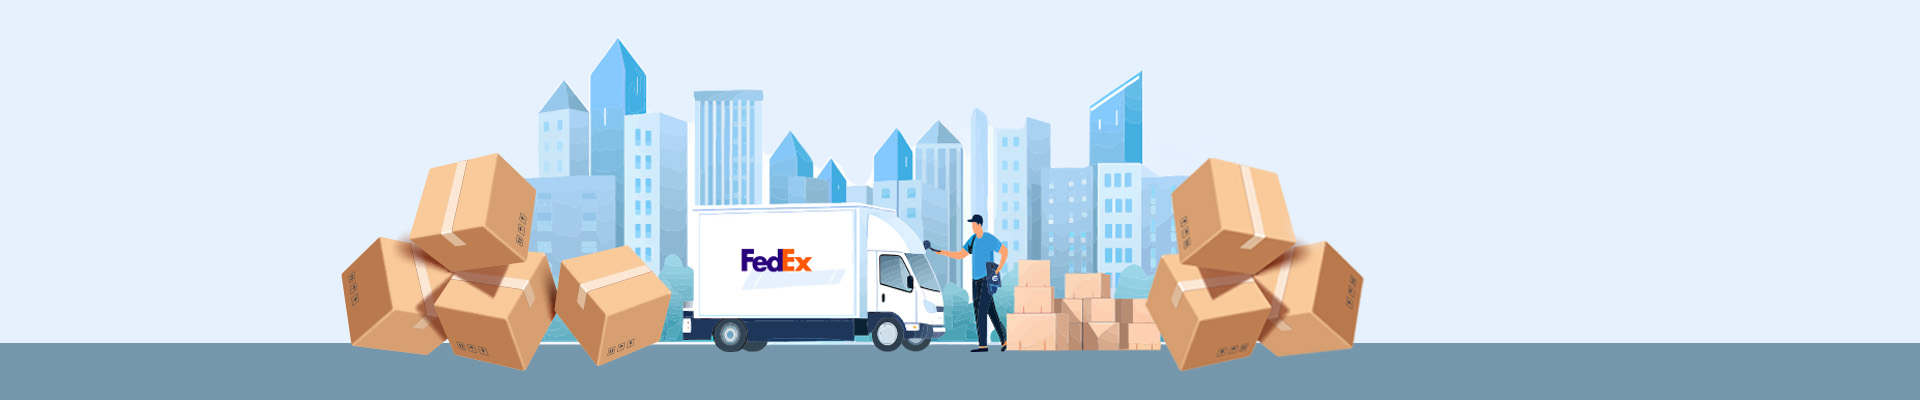 Nouveau service d'expédition - livraison désormais possible avec Fedex !